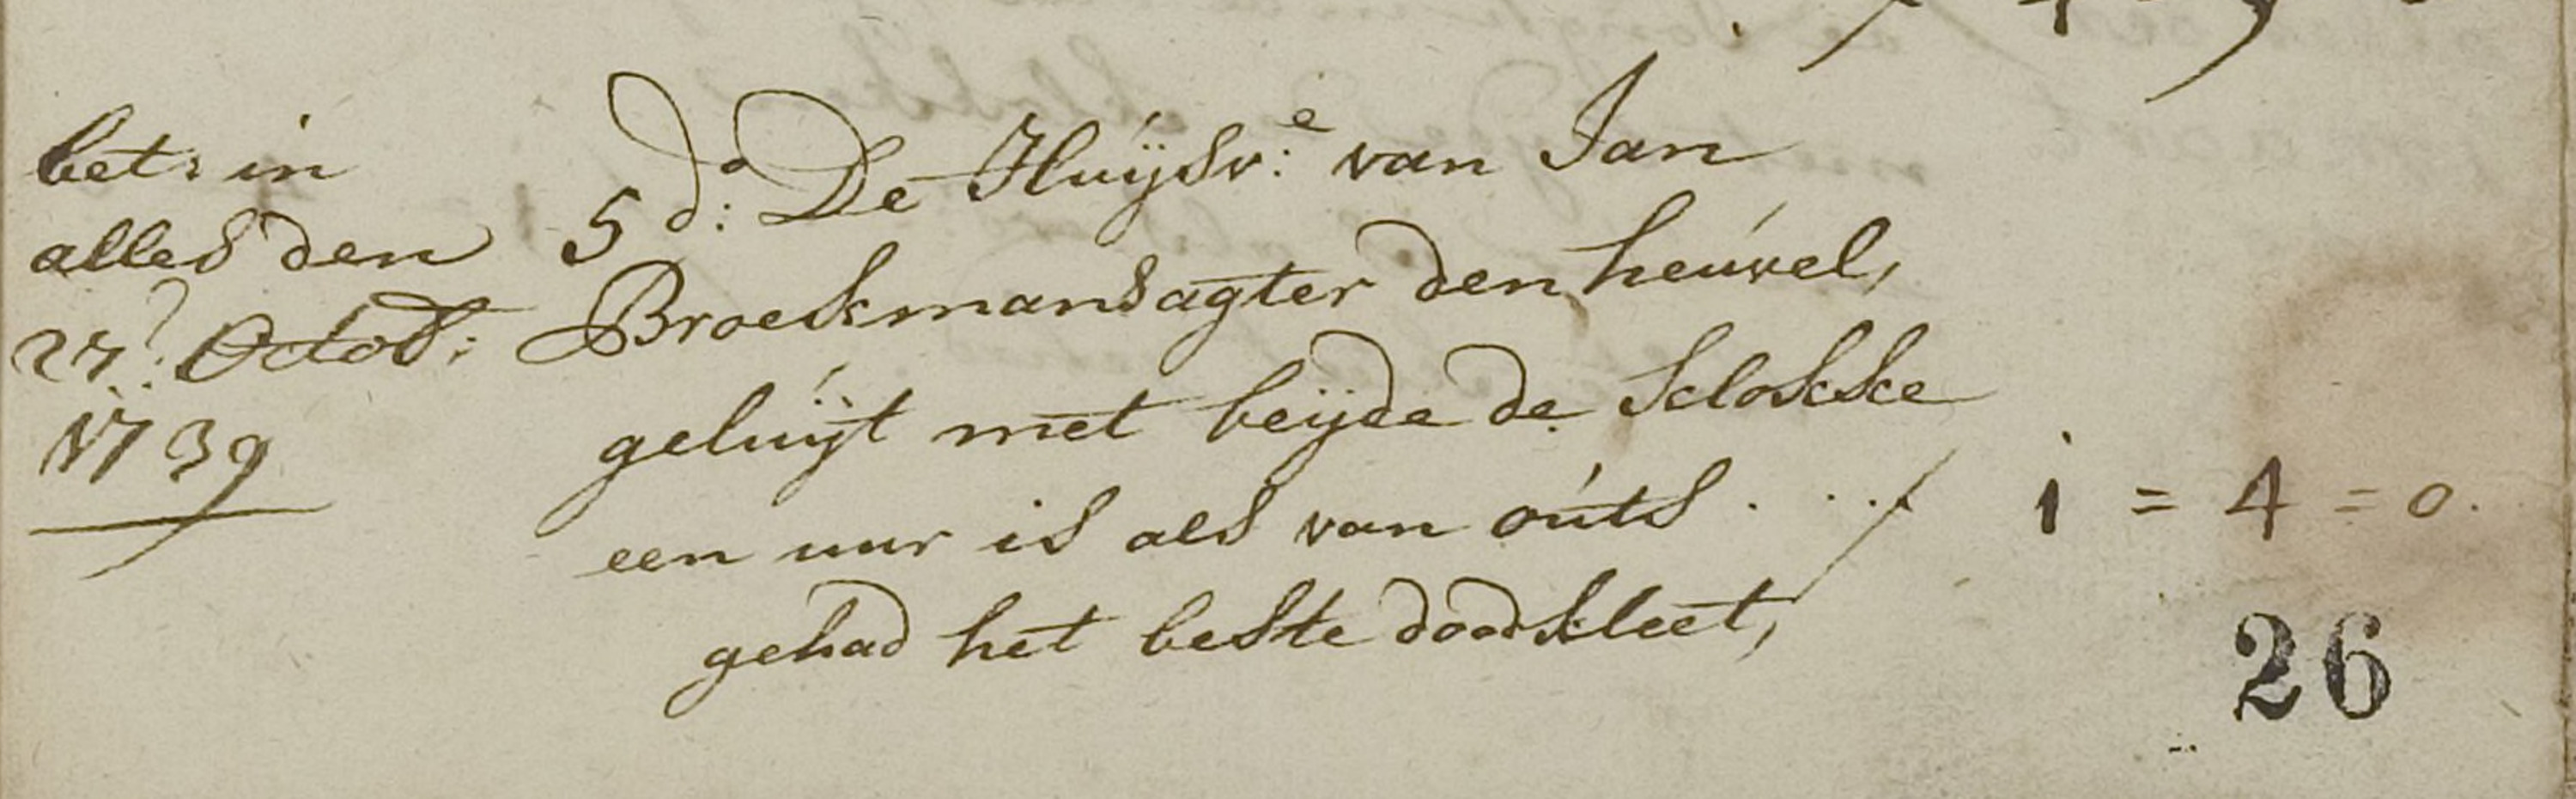 broekmans_jan_zijn_huisvrouw__begraven_in_dongen_op_5_oktober_1739.jpg